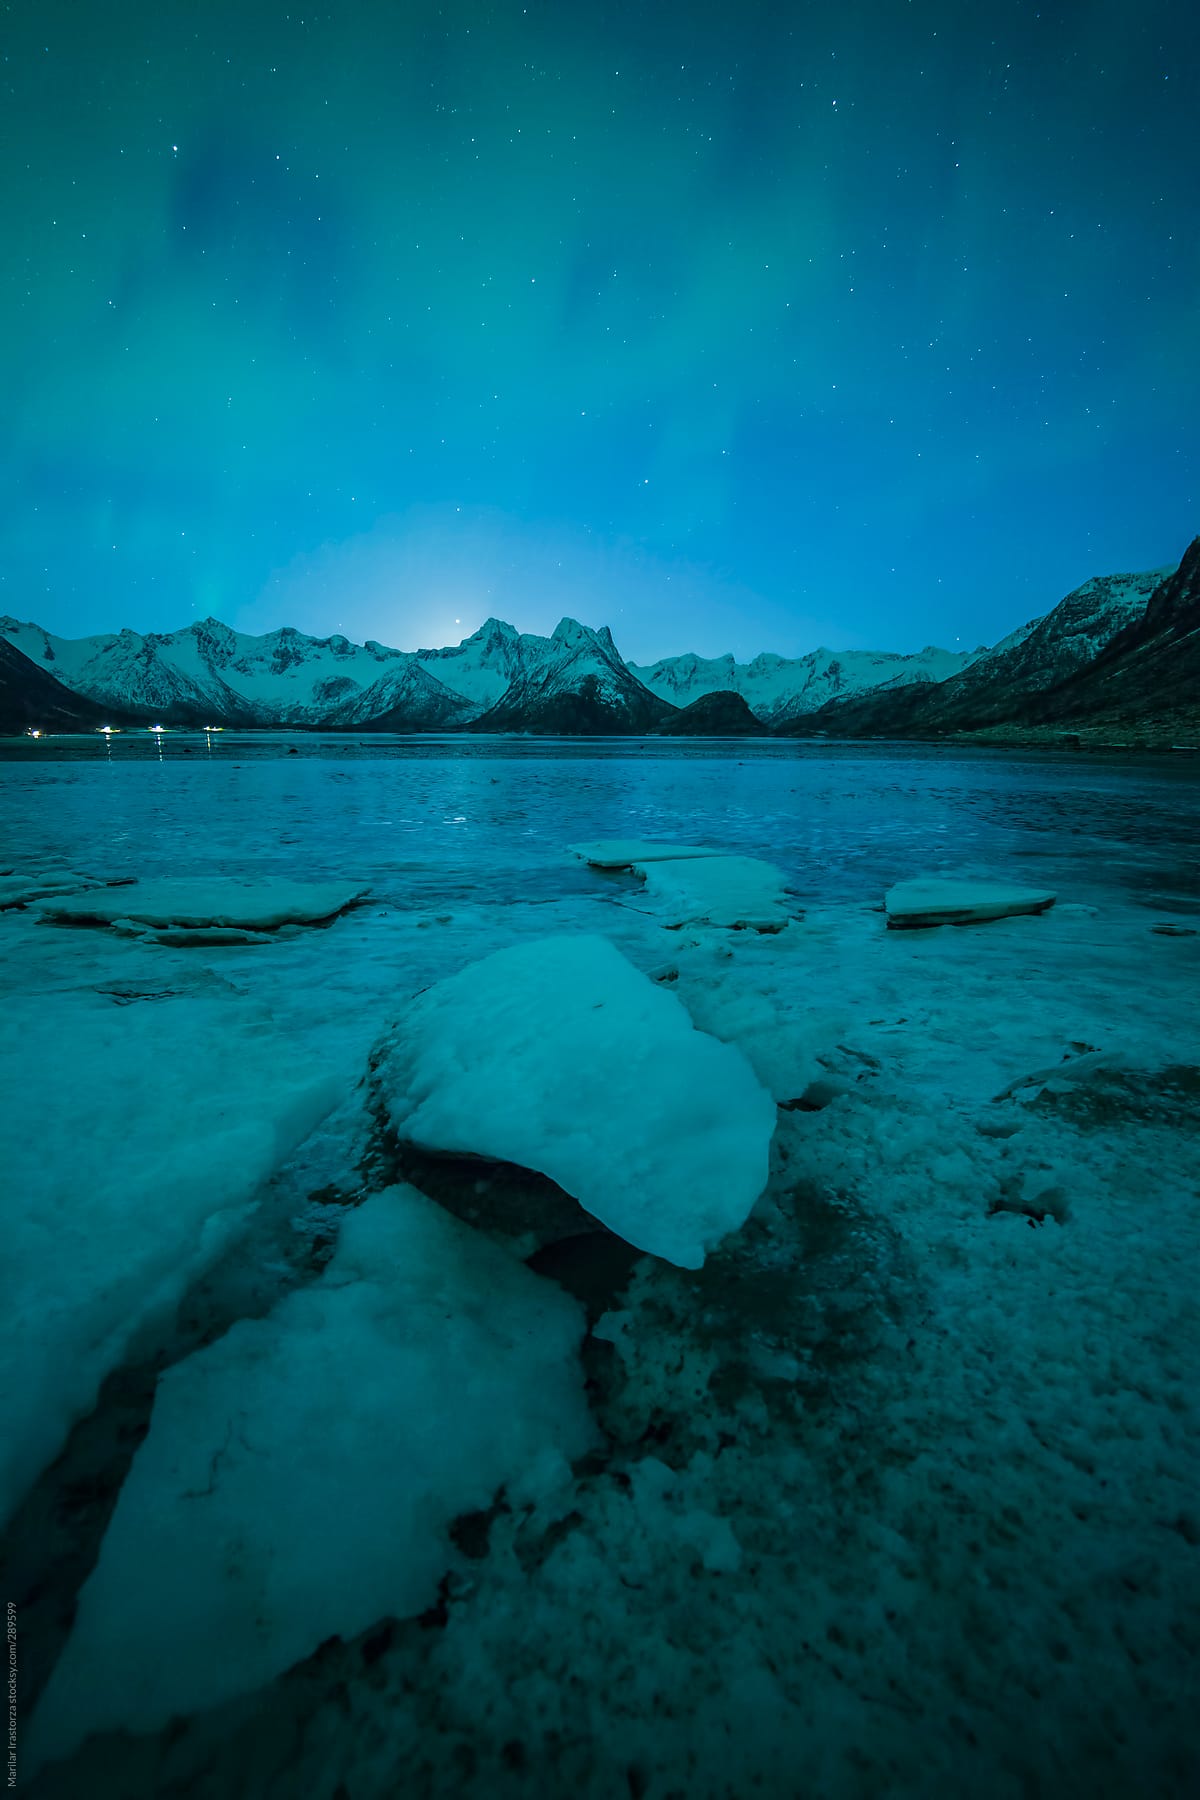 Northern lights over an ice lake